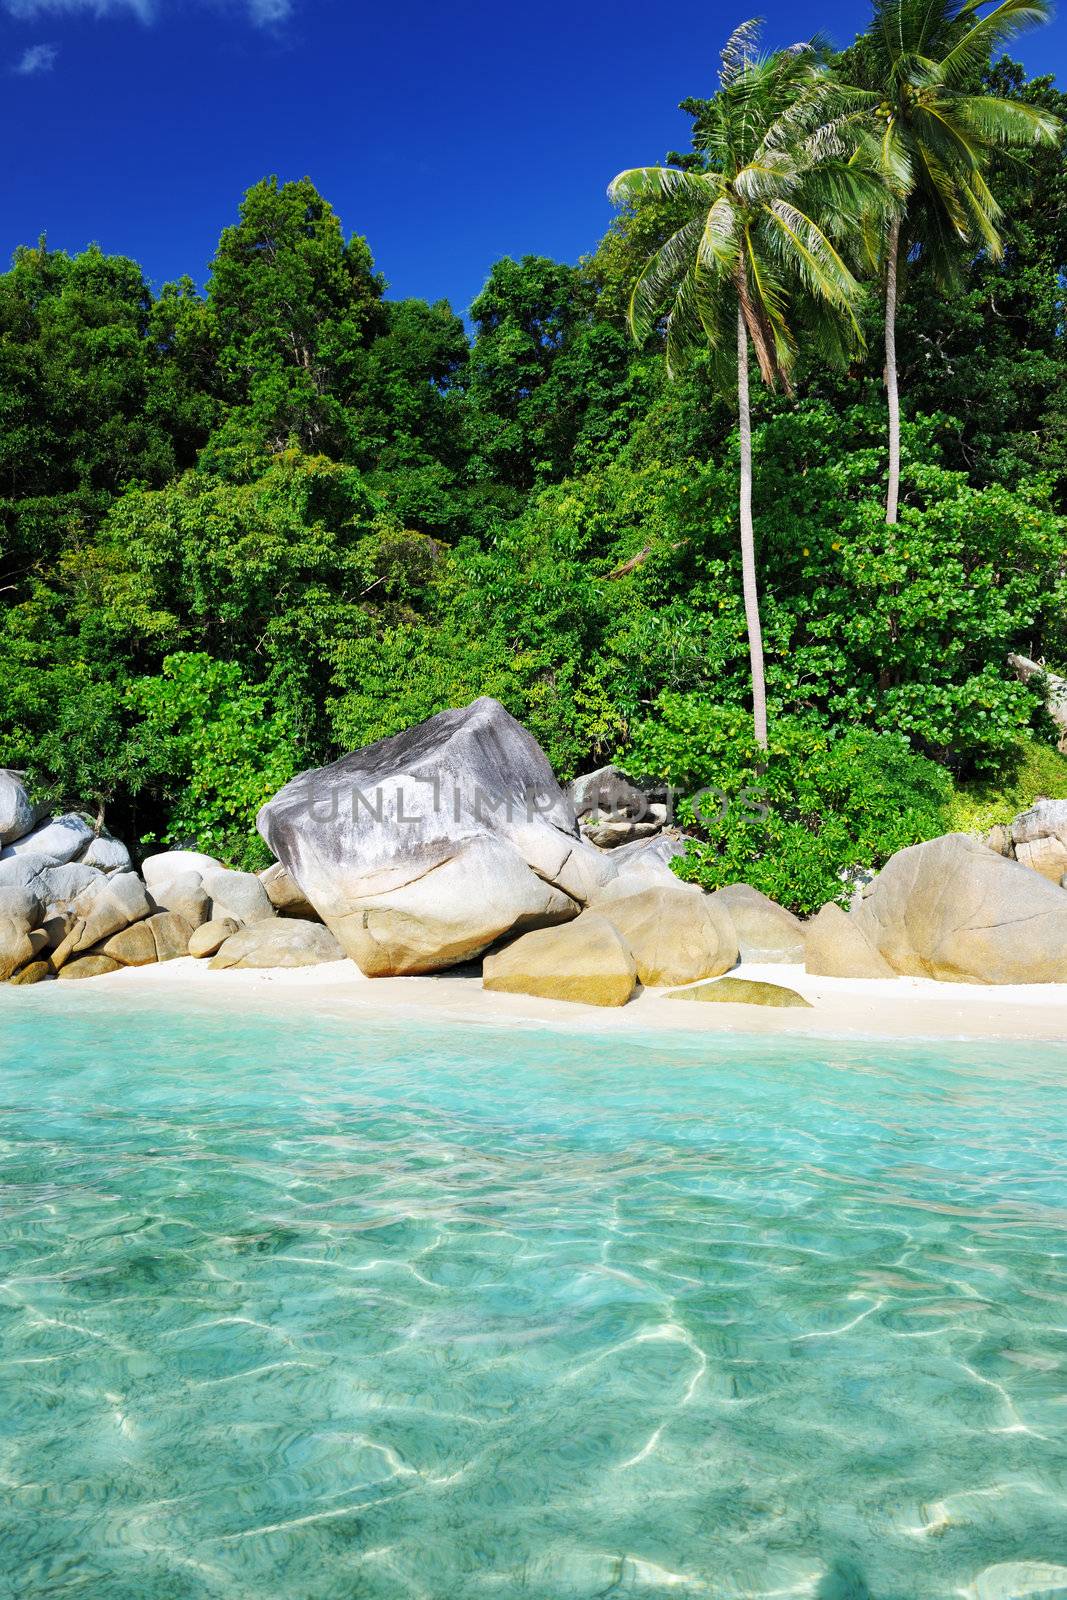 Beautiful beach at Perhentian islands, Malaysia